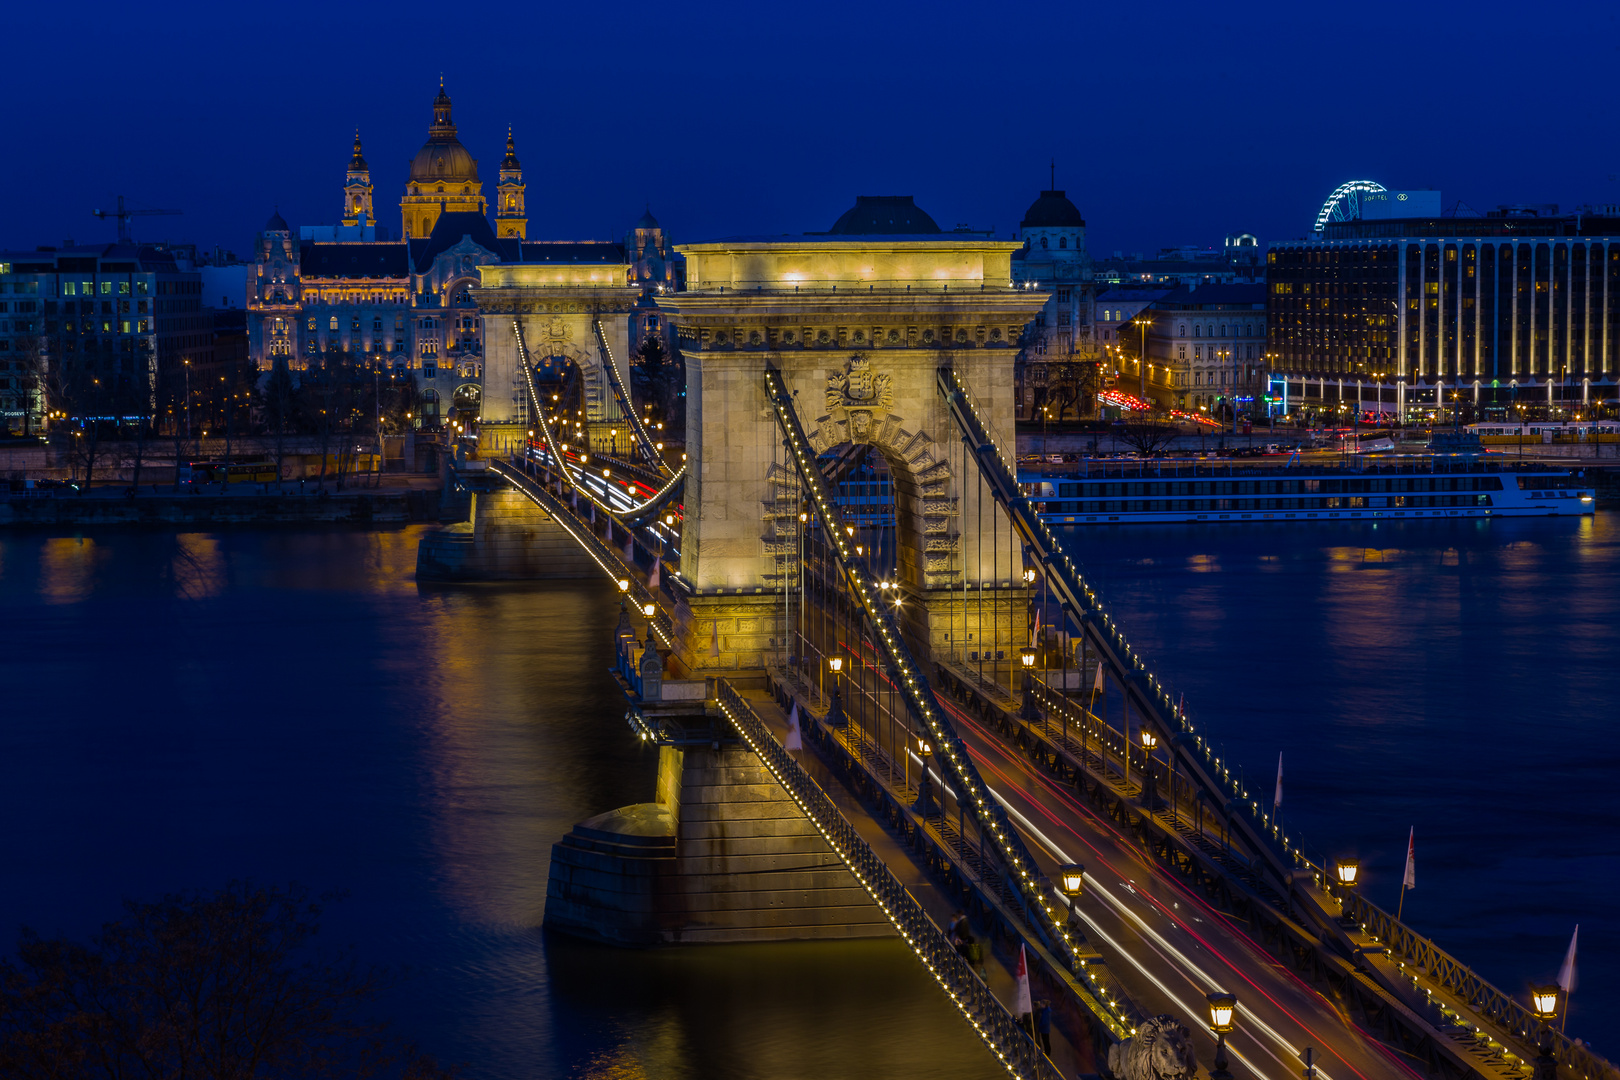 Blaue Stunde in Budapest